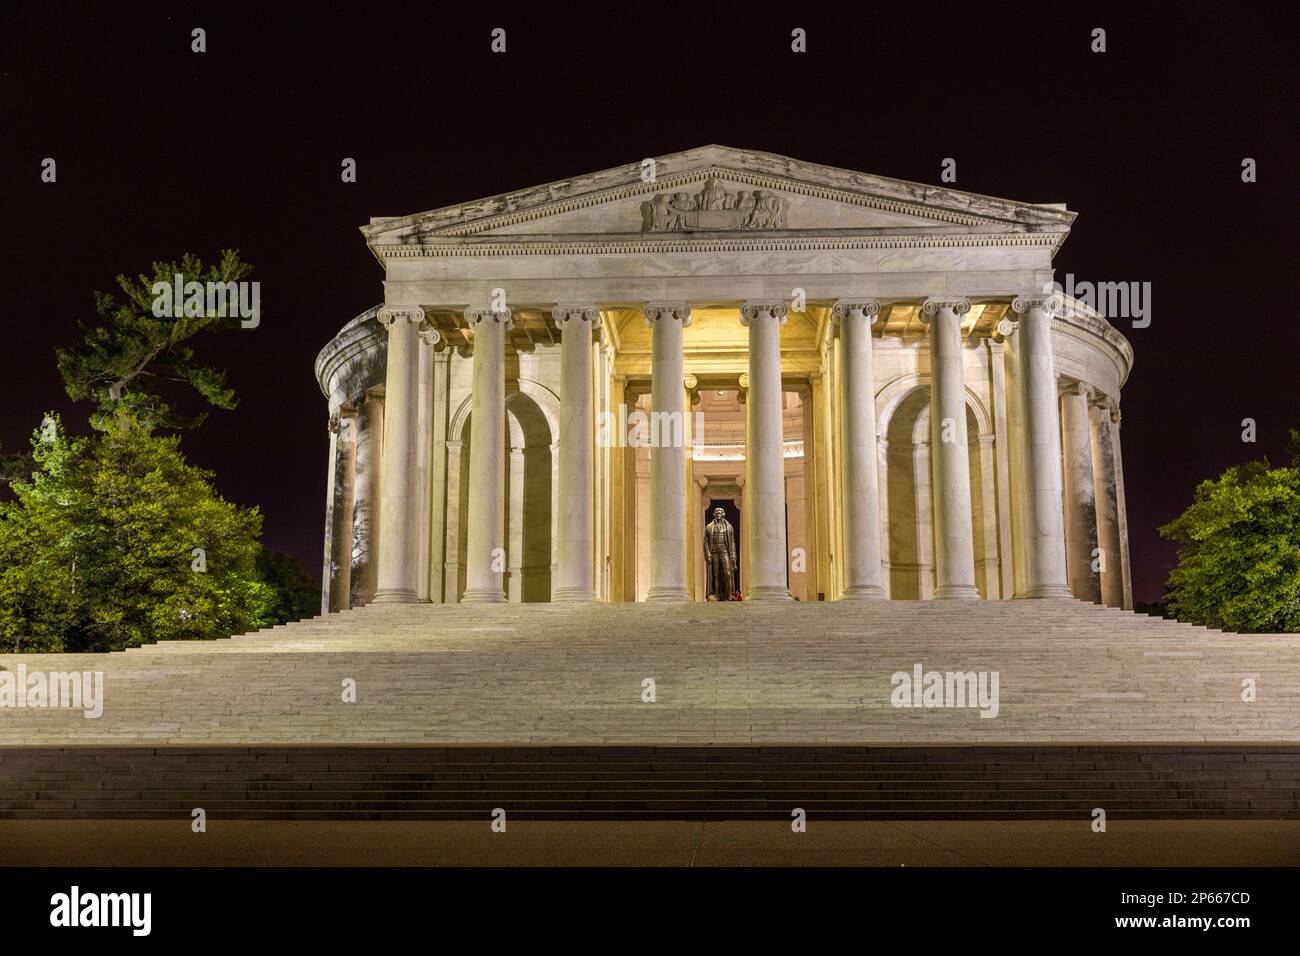 Una vista nocturna del Thomas Jefferson Memorial, iluminado por la noche en West Potomac Park, Washington, D.C., Estados Unidos de América, Norteamérica Foto de stock